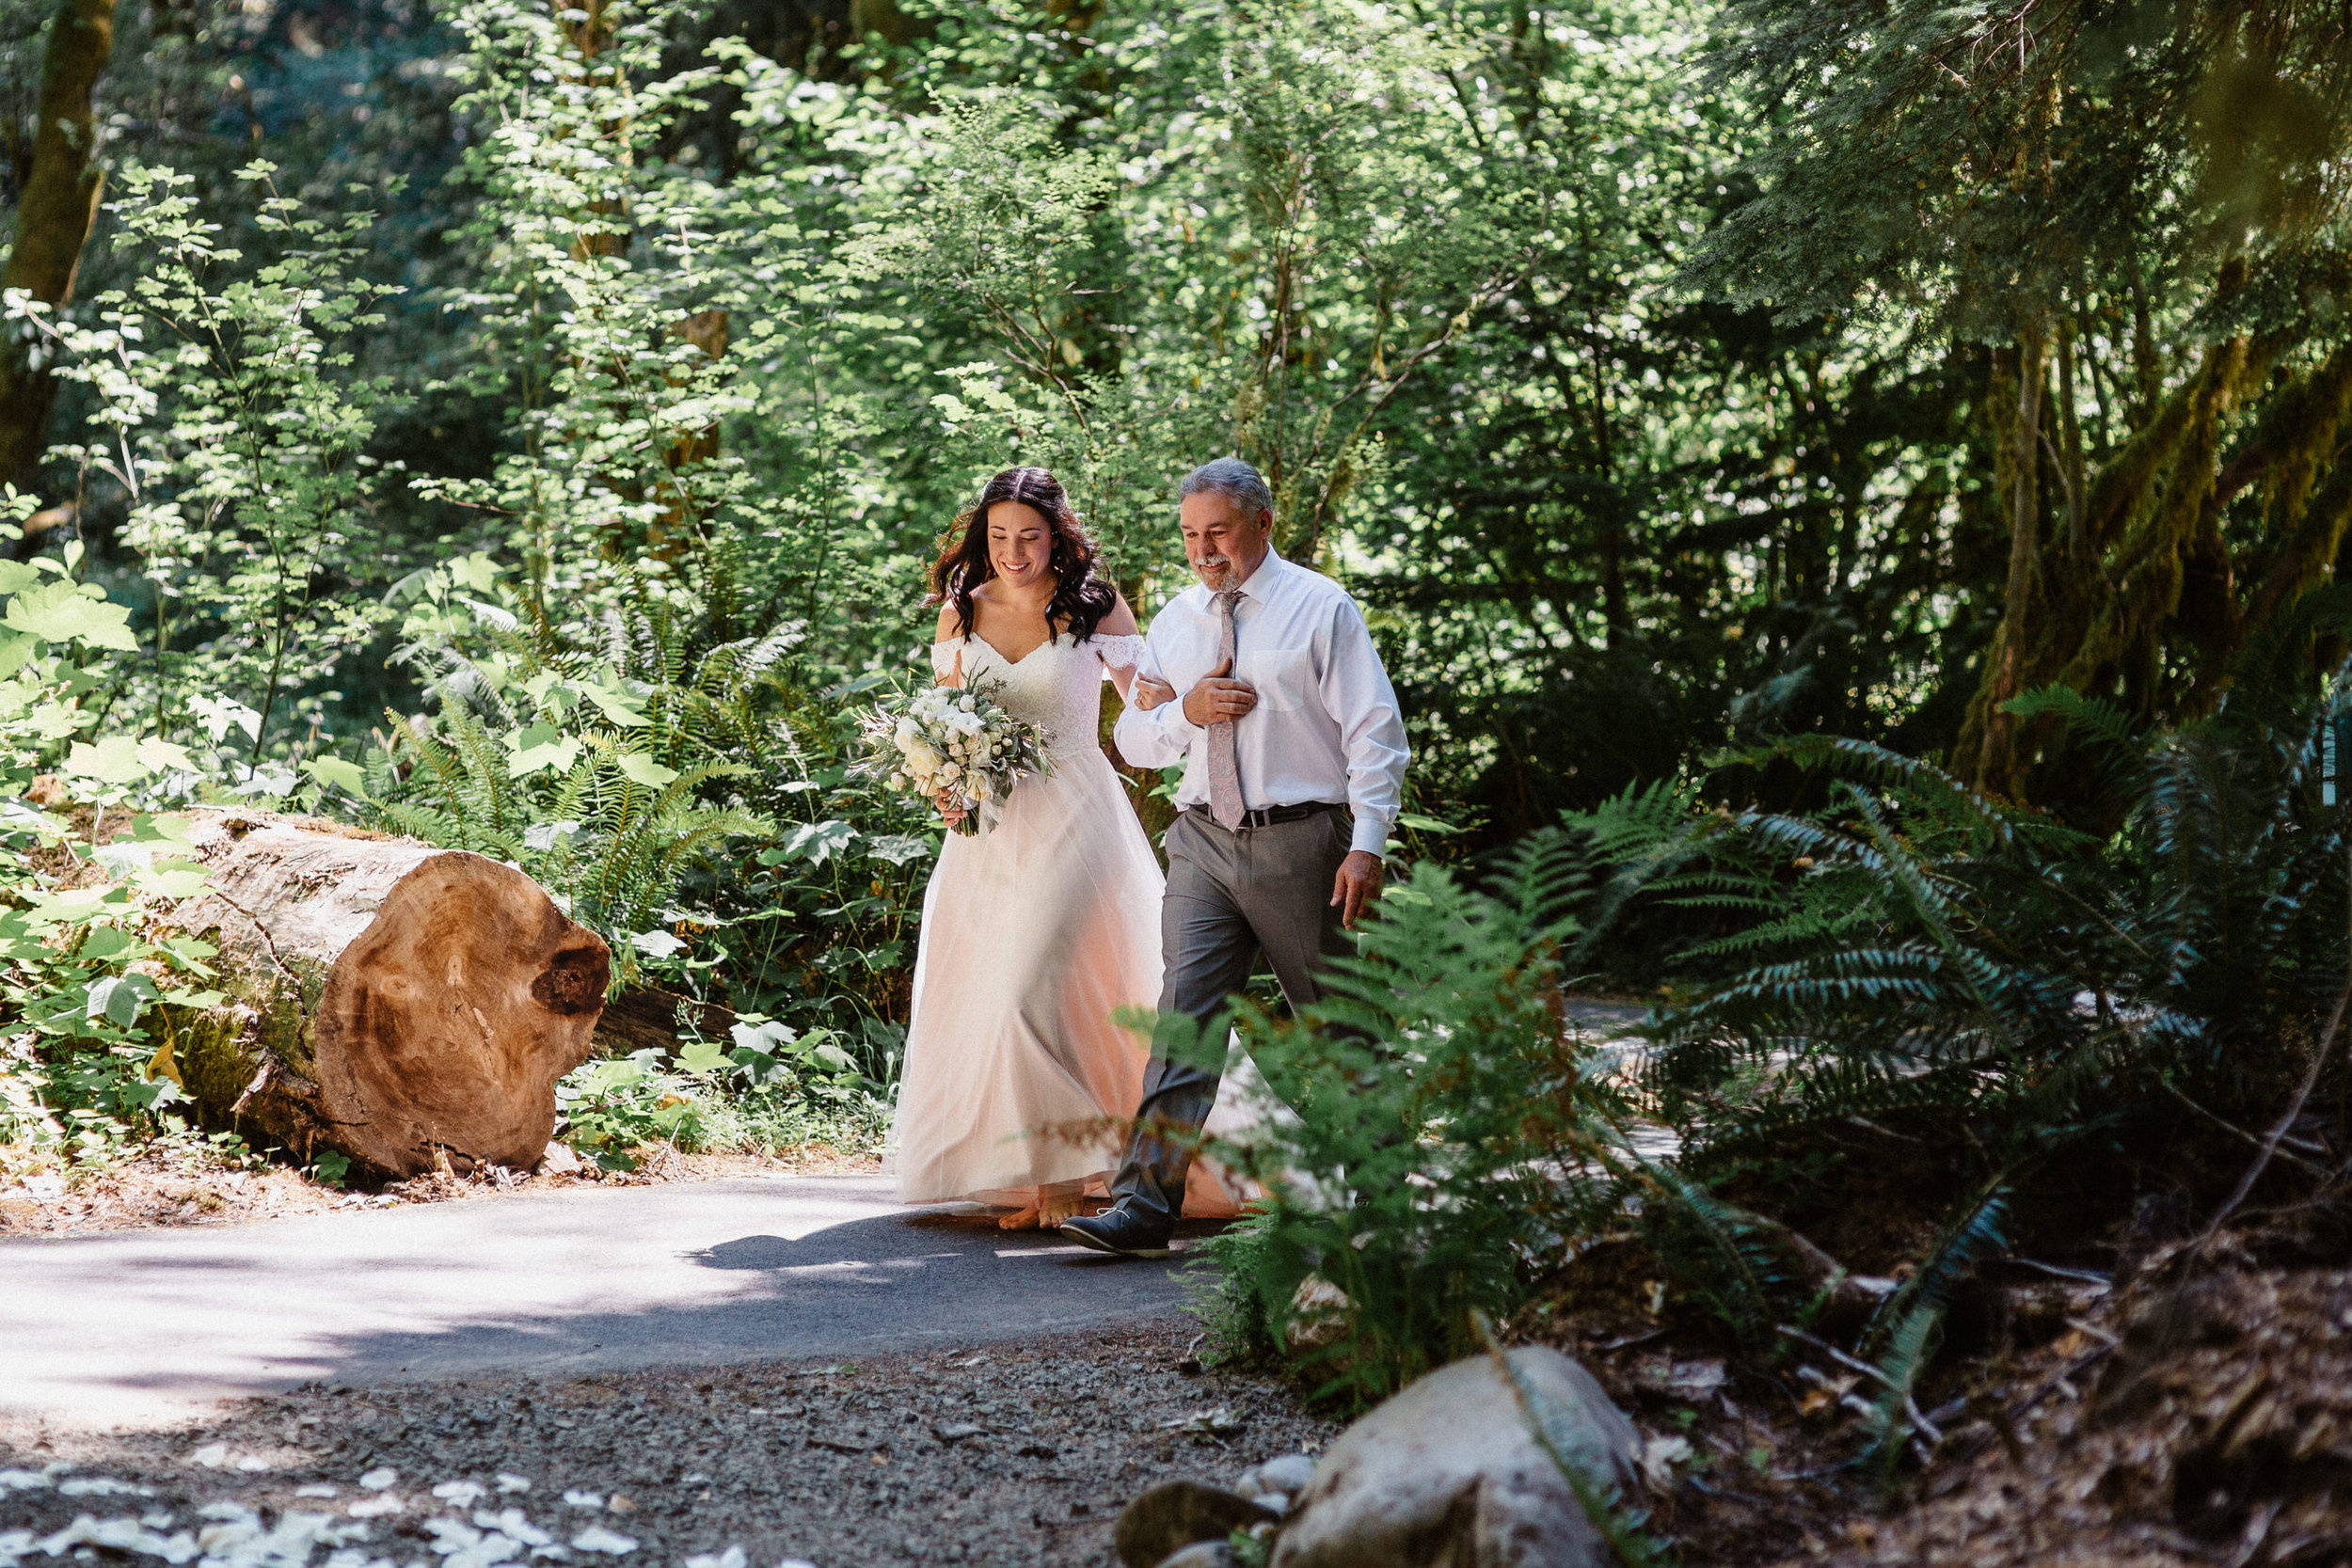 MT Hood Wildwood elopement wedding oregon portland photography0005.JPG